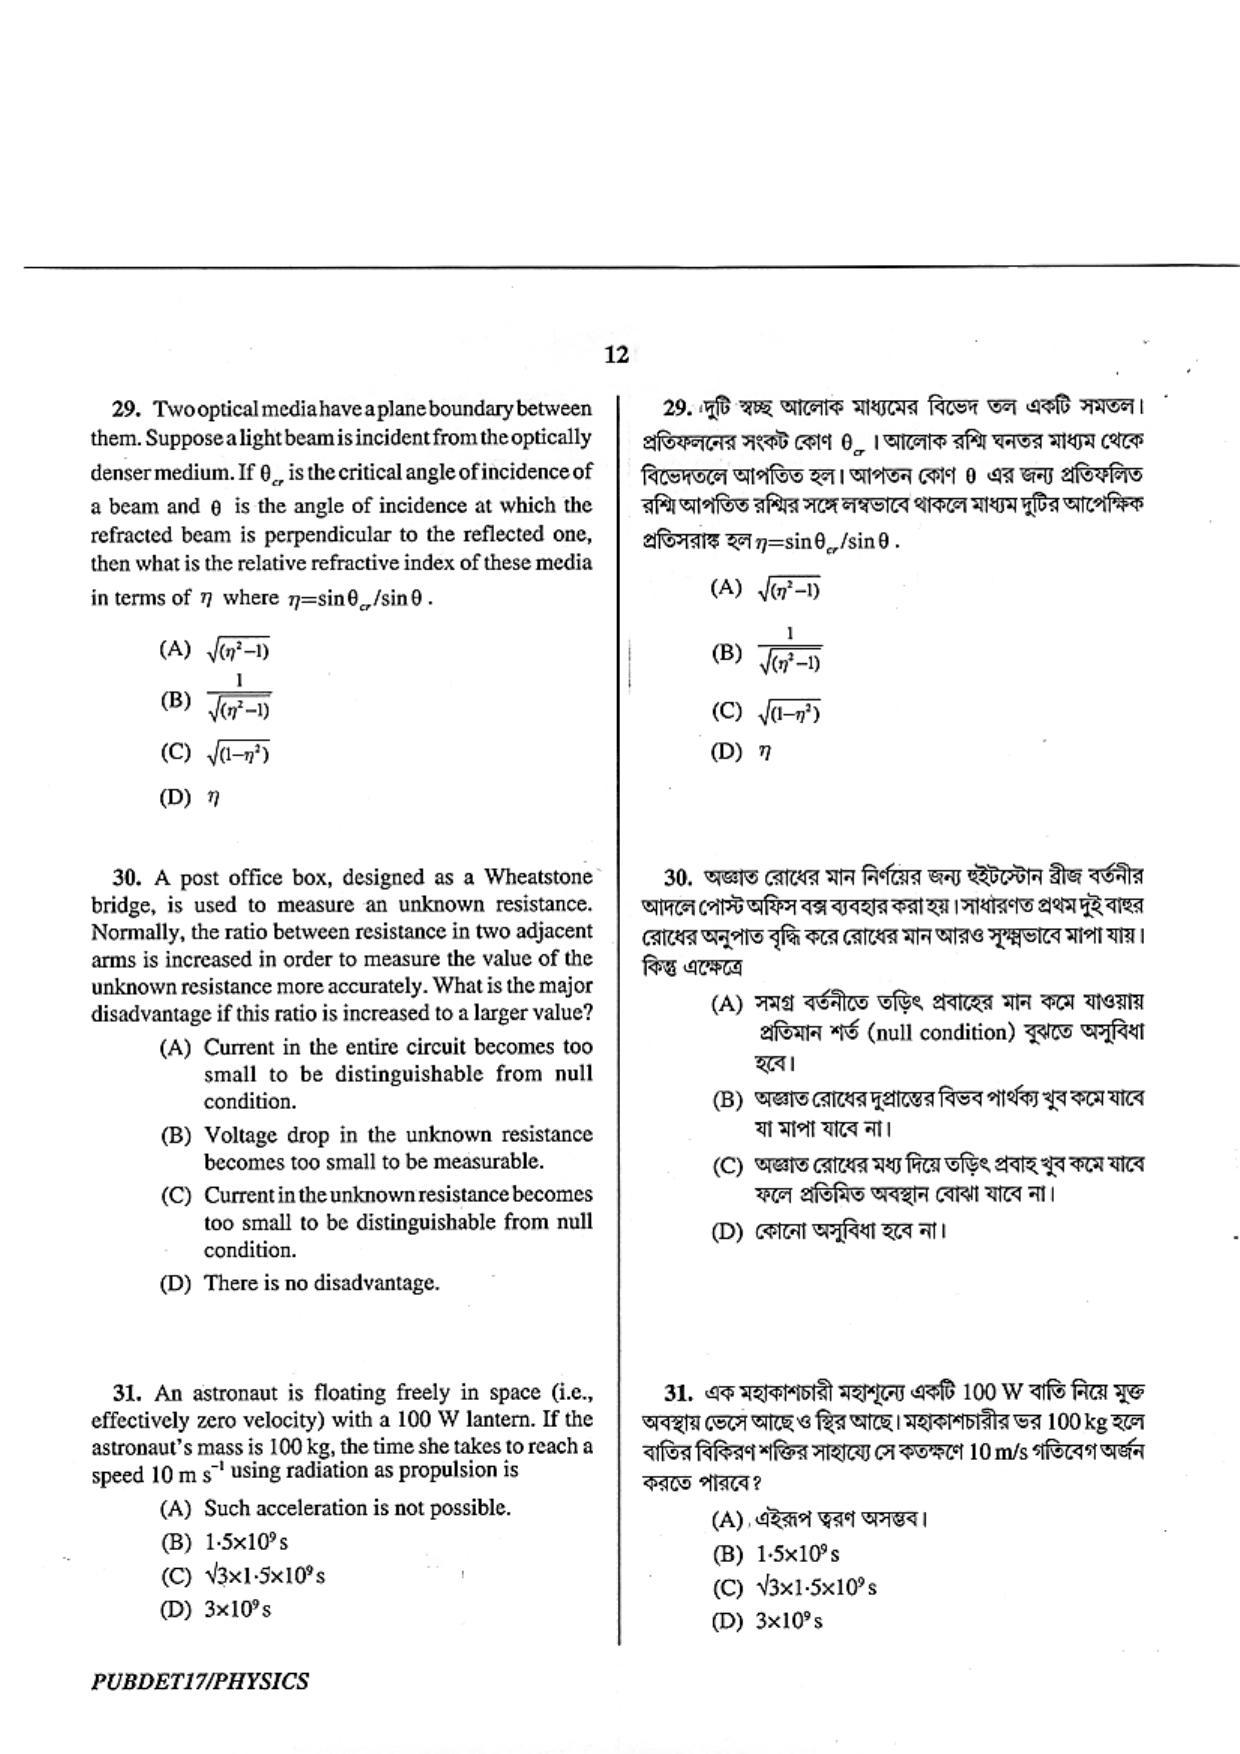 PUBDET 2017 Physics Question Paper - Page 12